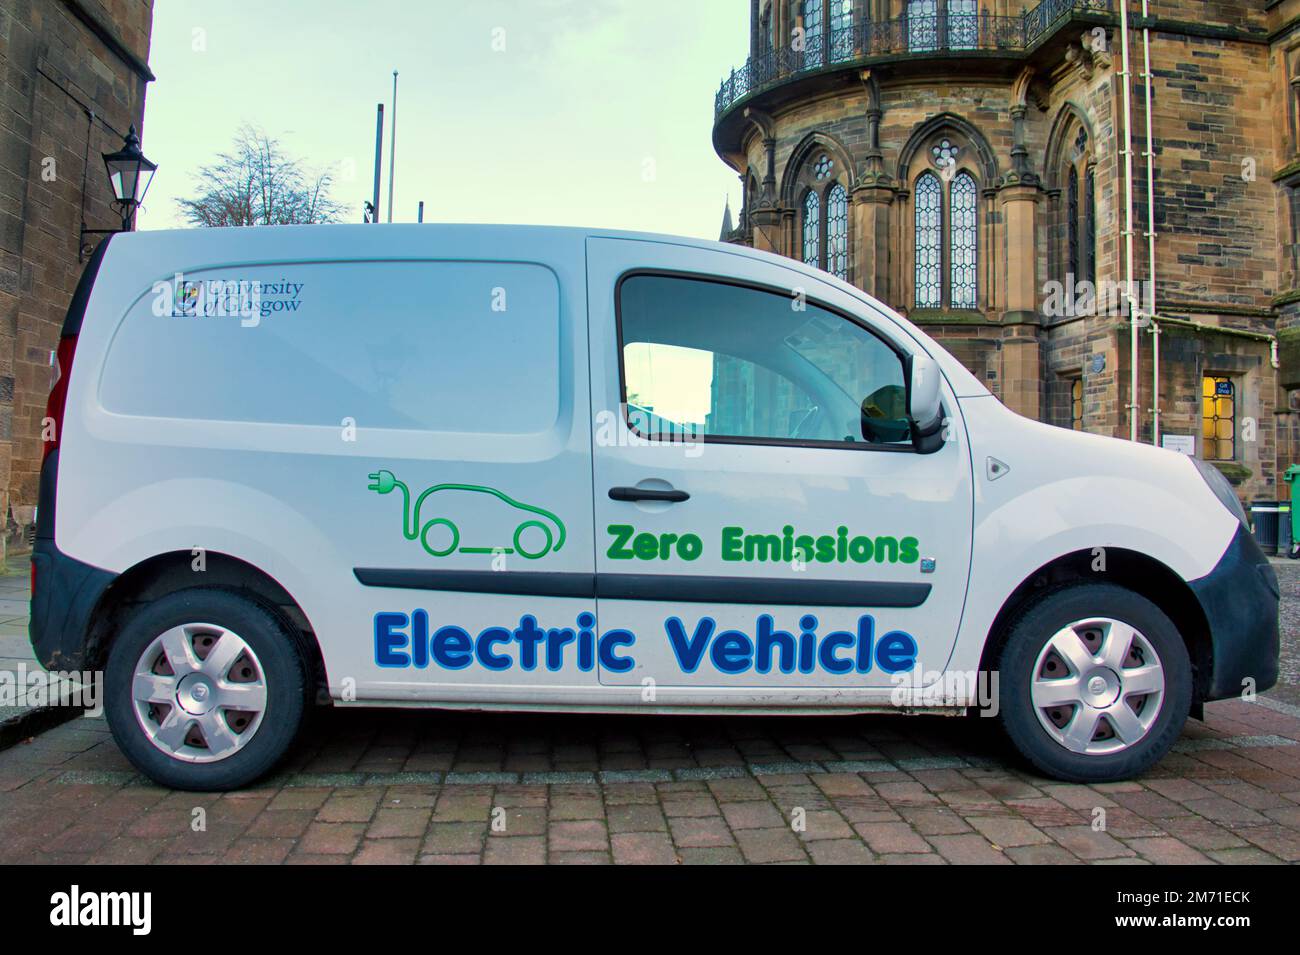 Véhicule électrique de l'Université de Glasgow, véhicule utilitaire zéro émission Banque D'Images